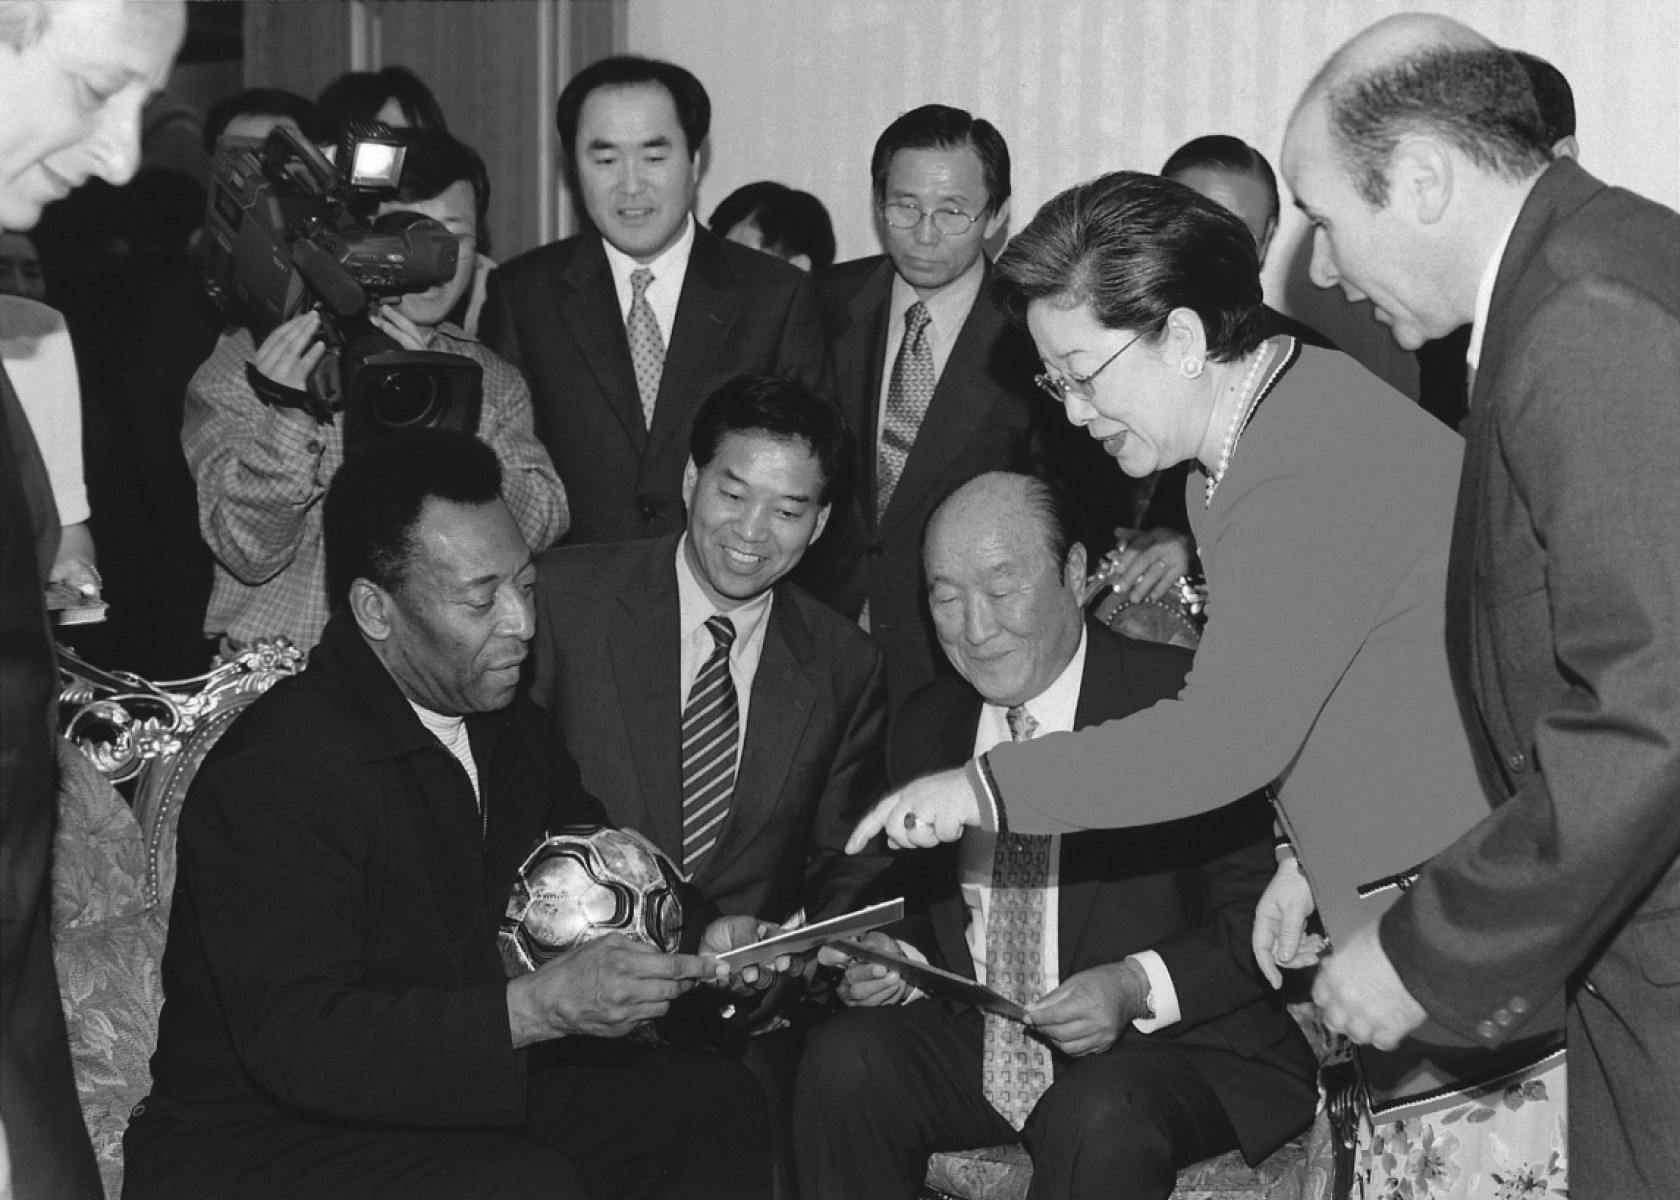 4 червня 2002 року король футболу Пеле відвідав резиденцію доктора Муна в Кореї